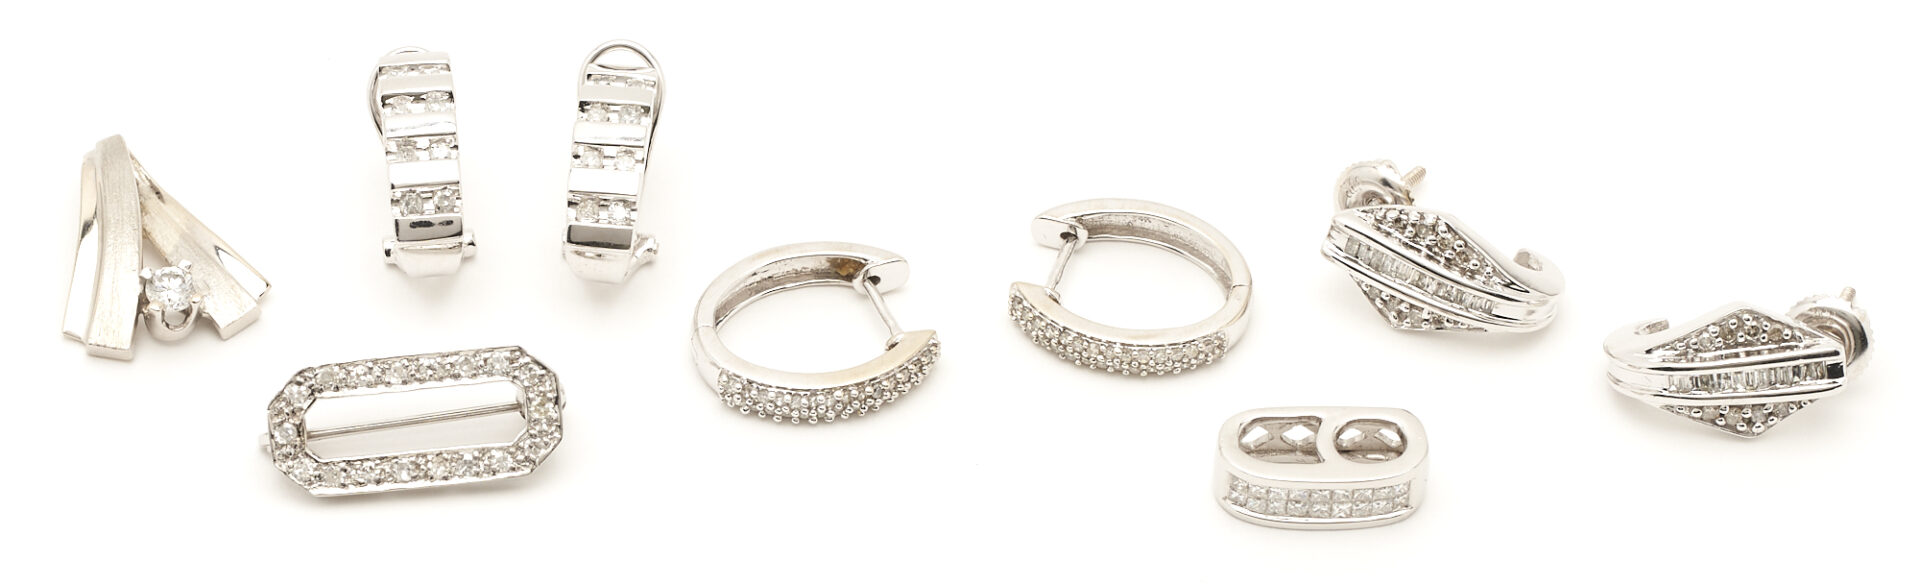 Lot 72: 6 Ladies' Gold Jewelry Items, incl. Earrings,Pendants & Brooch